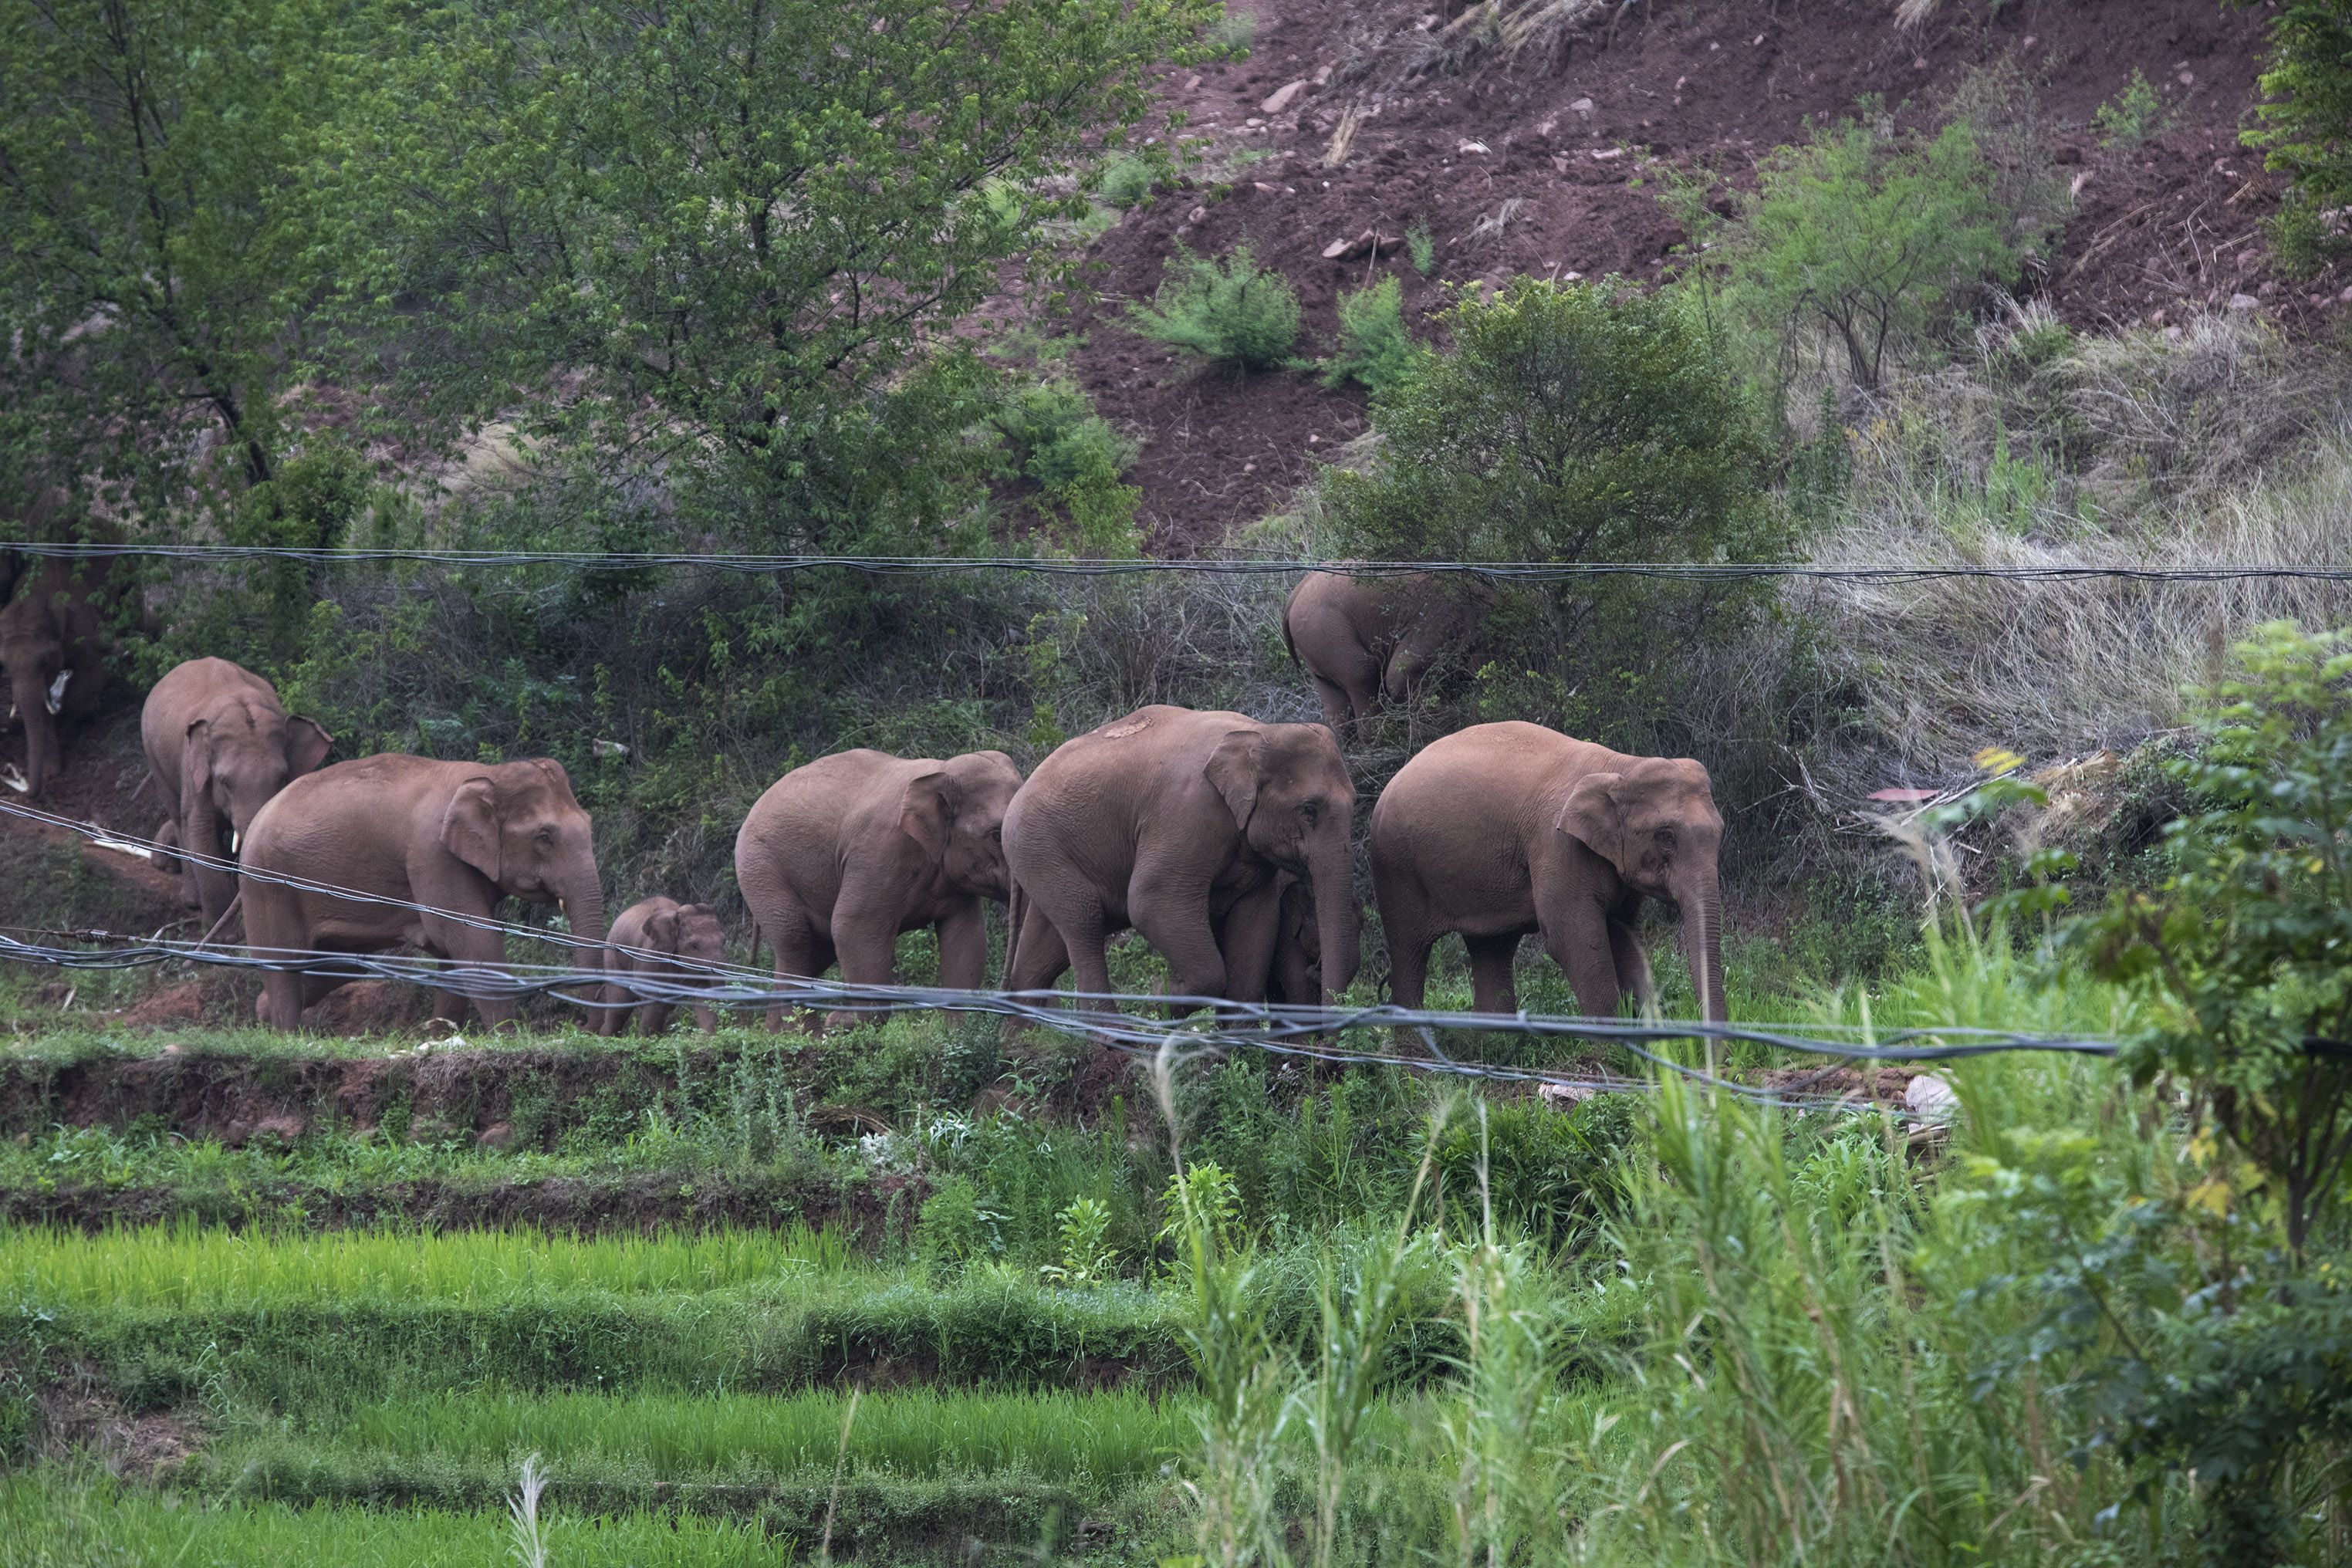 雲南象群北遷長征一年走500公里 倒地睡覺 河裡打水仗 15頭野象超萌圖輯